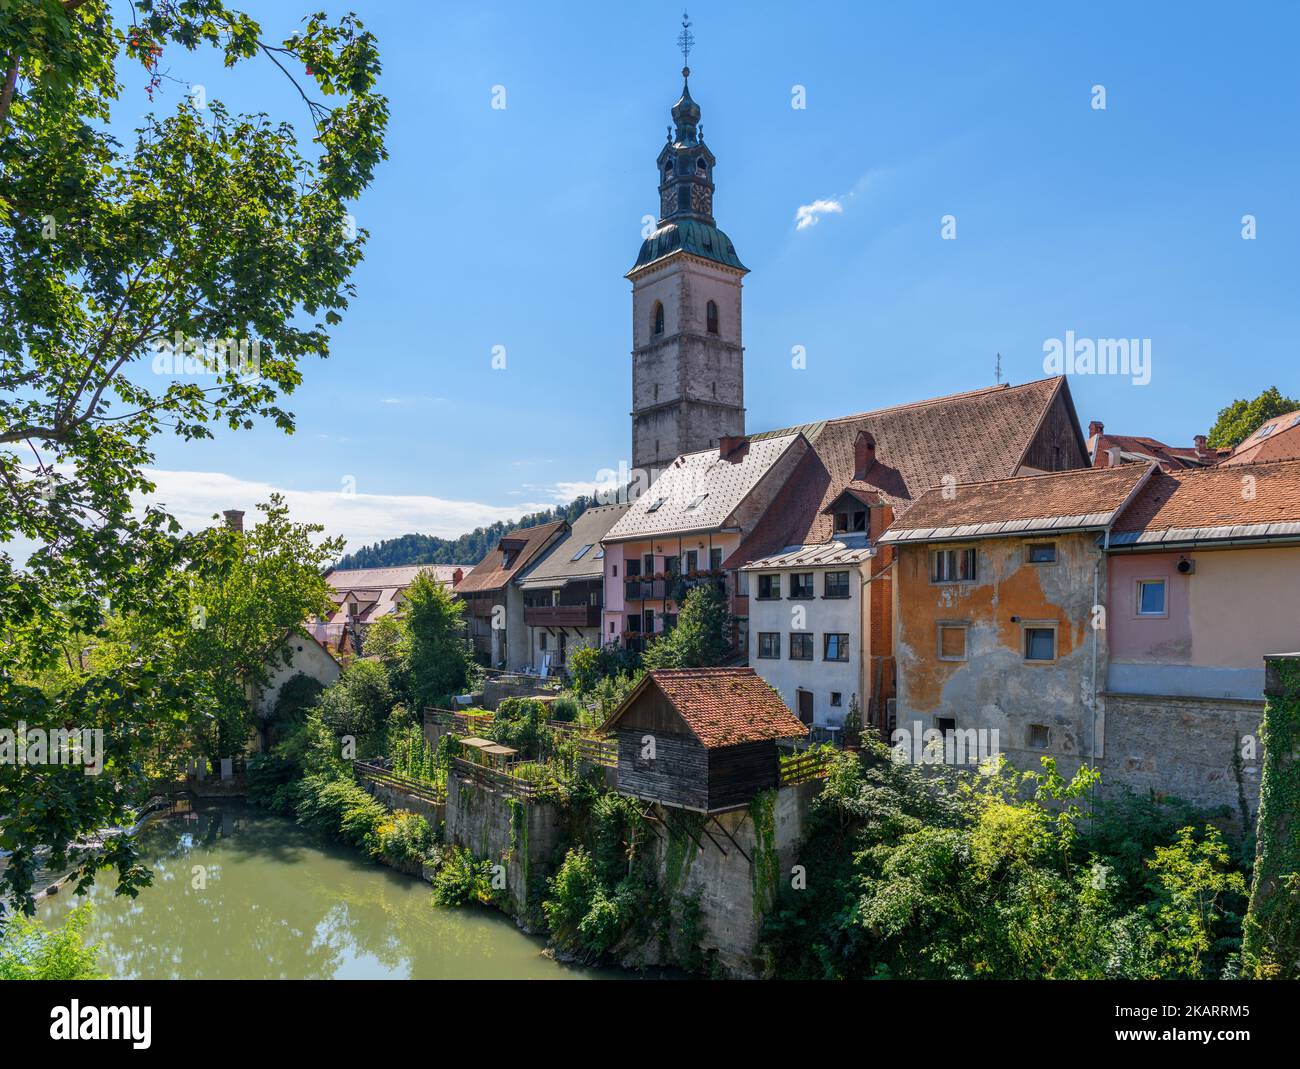 The river Selska Sora in the historic old town of Skofja Loka, Slovenia Stock Photo